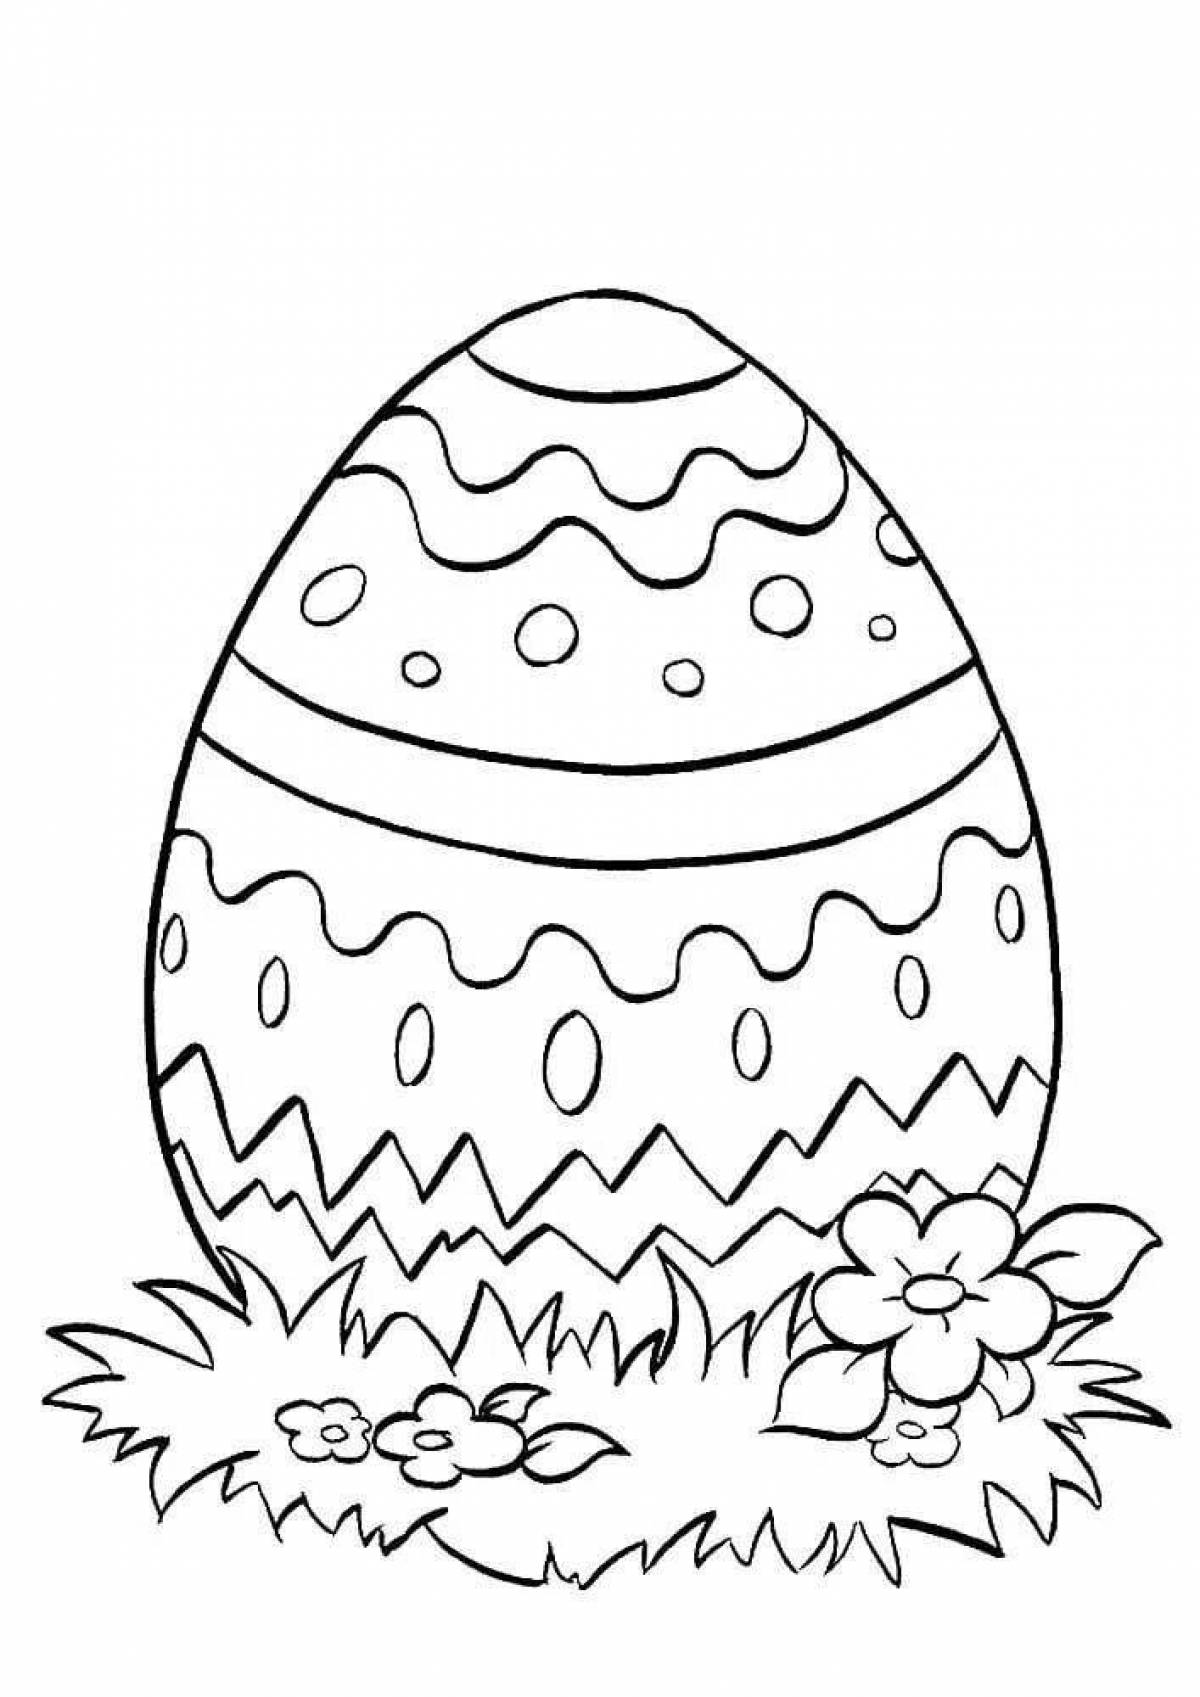 Раскрашиваем пасхальные. Раскраски пасхальные для детей. Раскраска Пасха для детей. Пасхальное яйцо раскраска. Раскраски пасочных яиц.